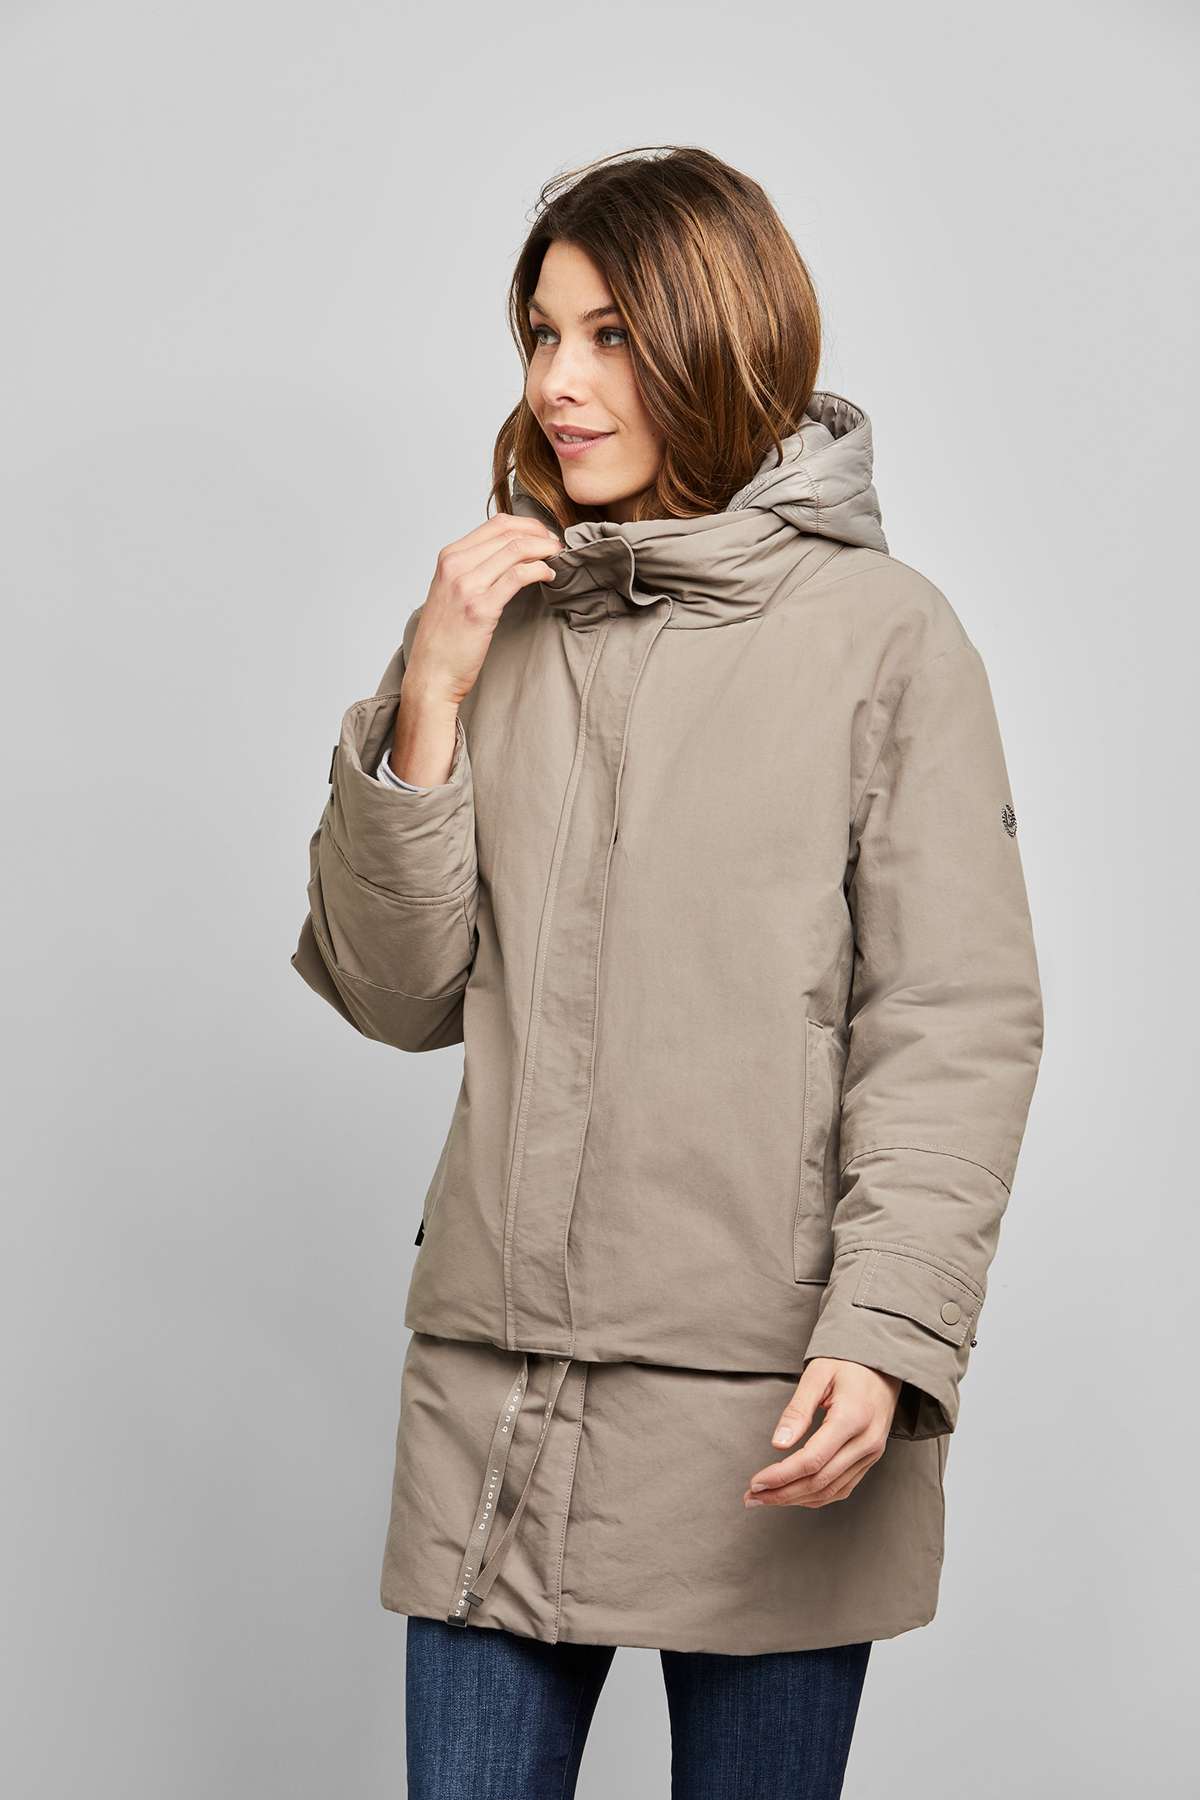 Короткое пальто из серии многофункциональной смарт-одежды.